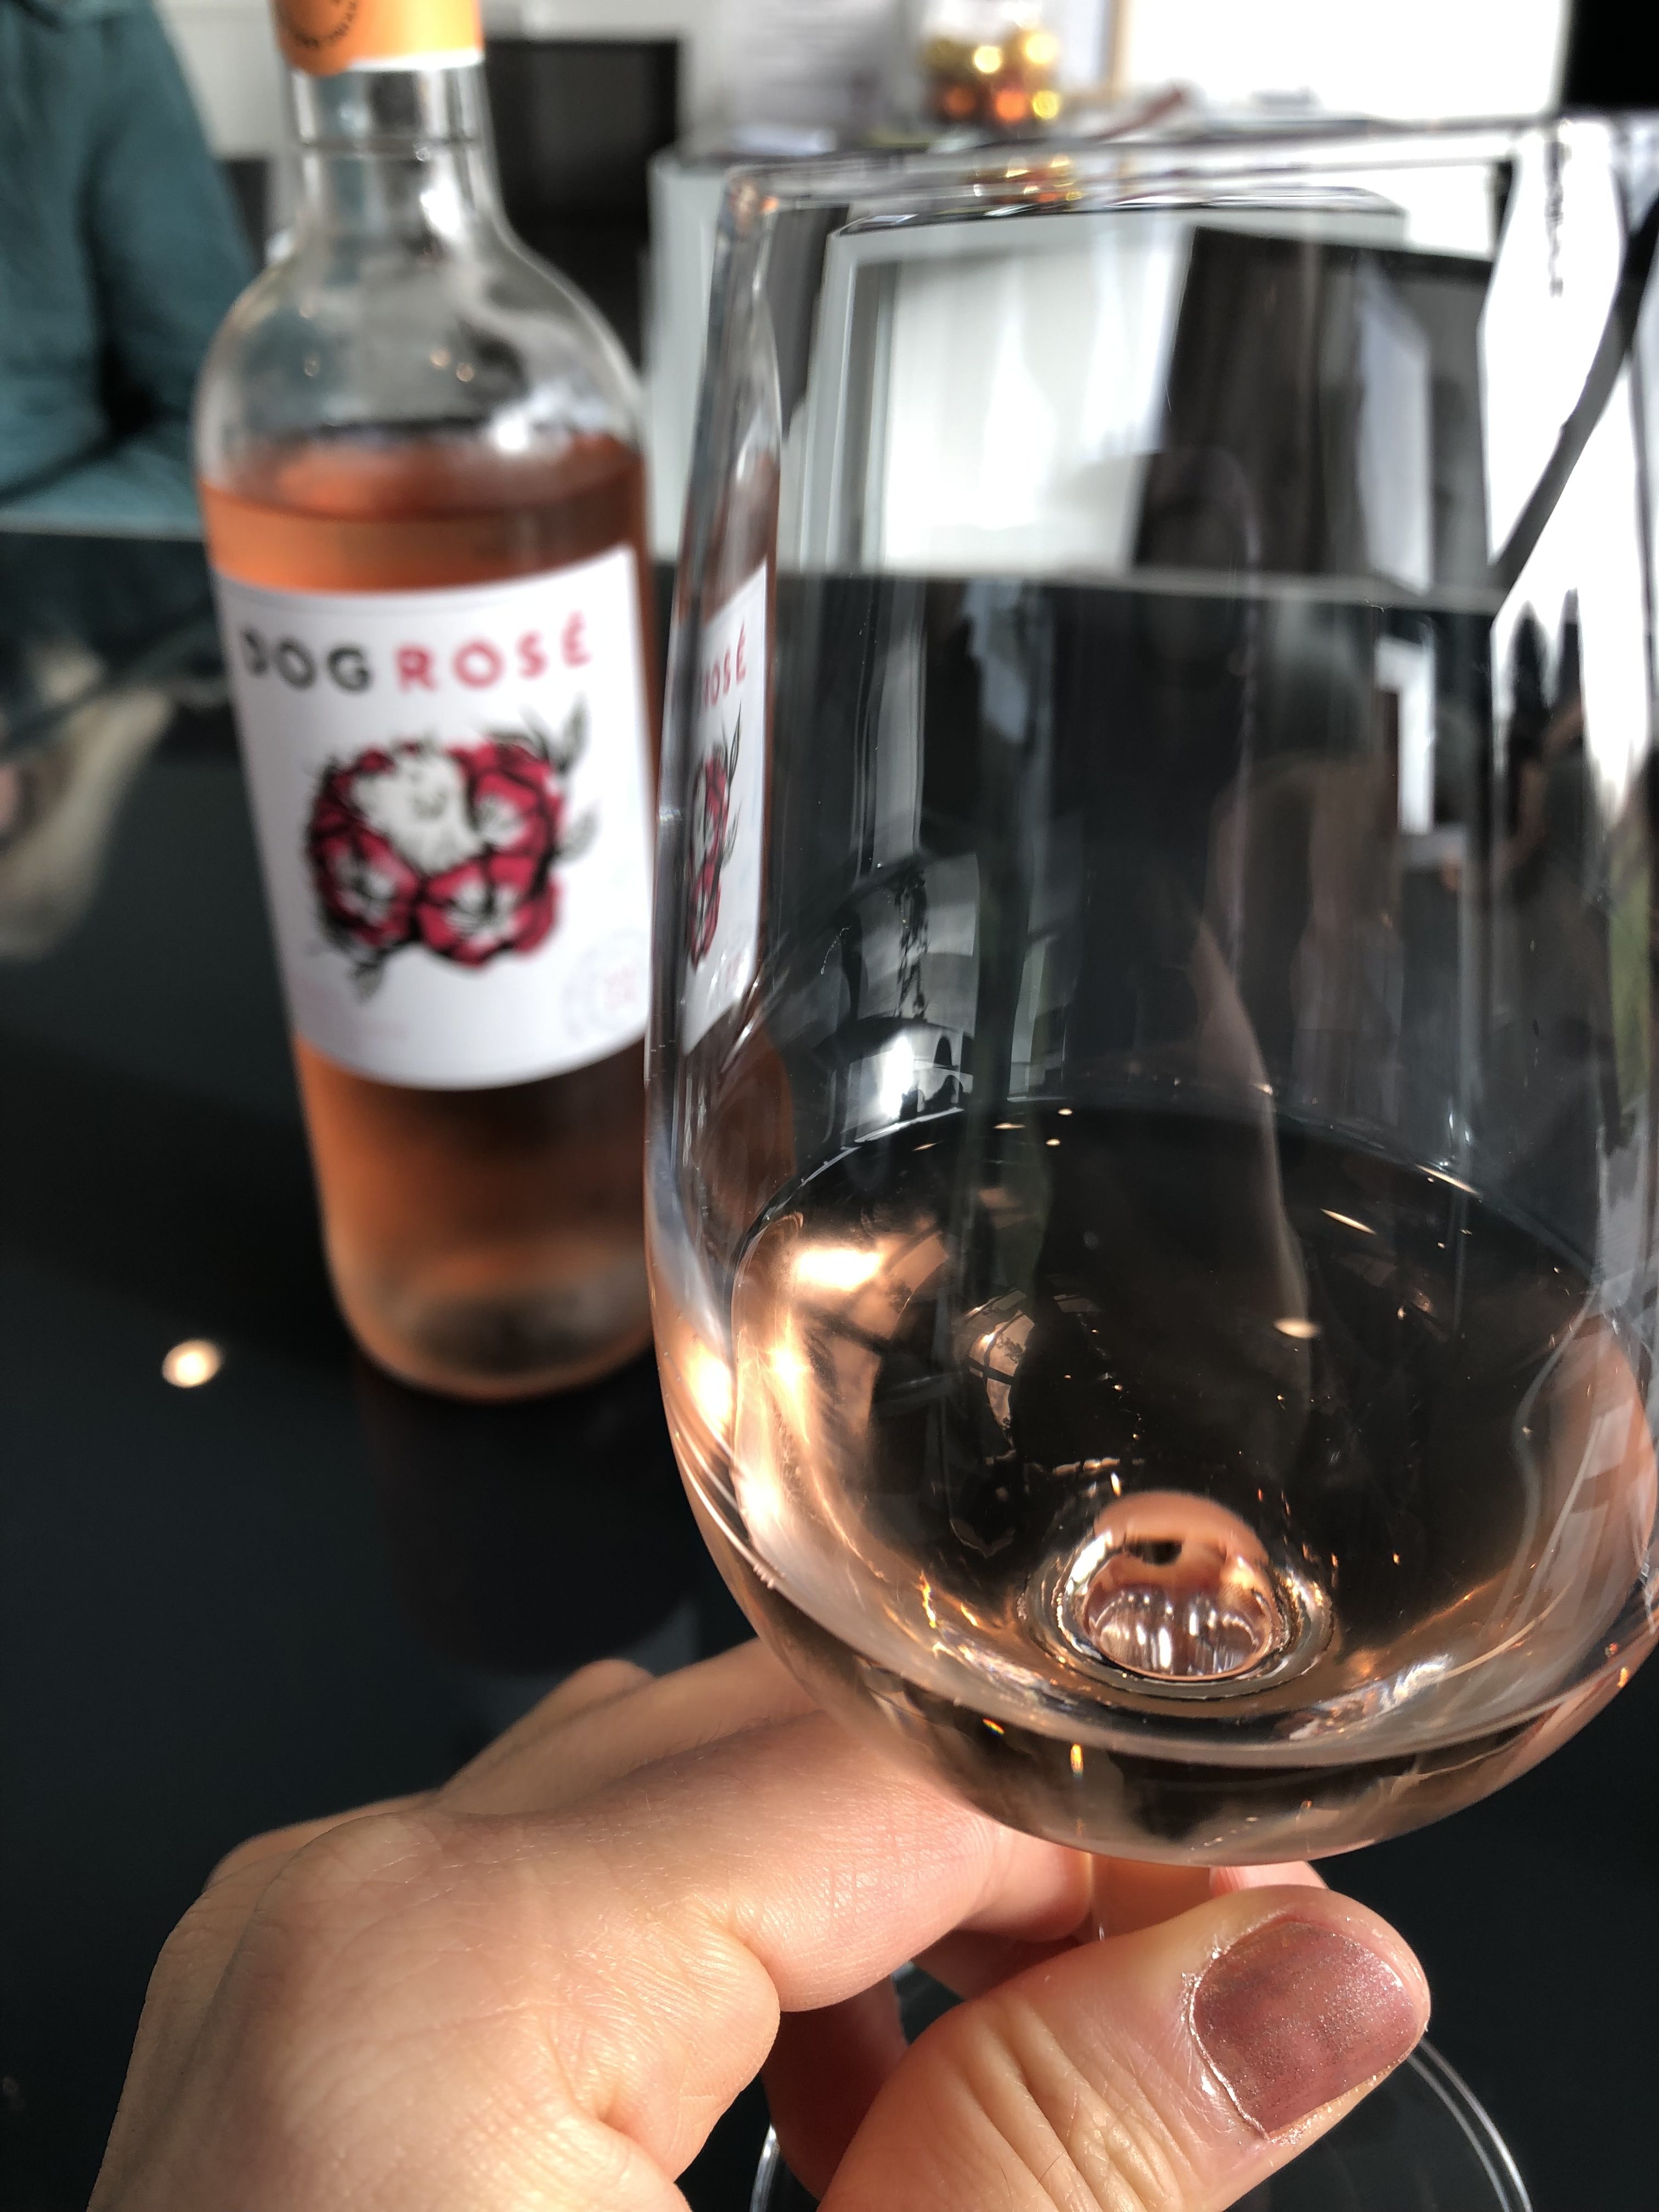 Rosé Sussex wine